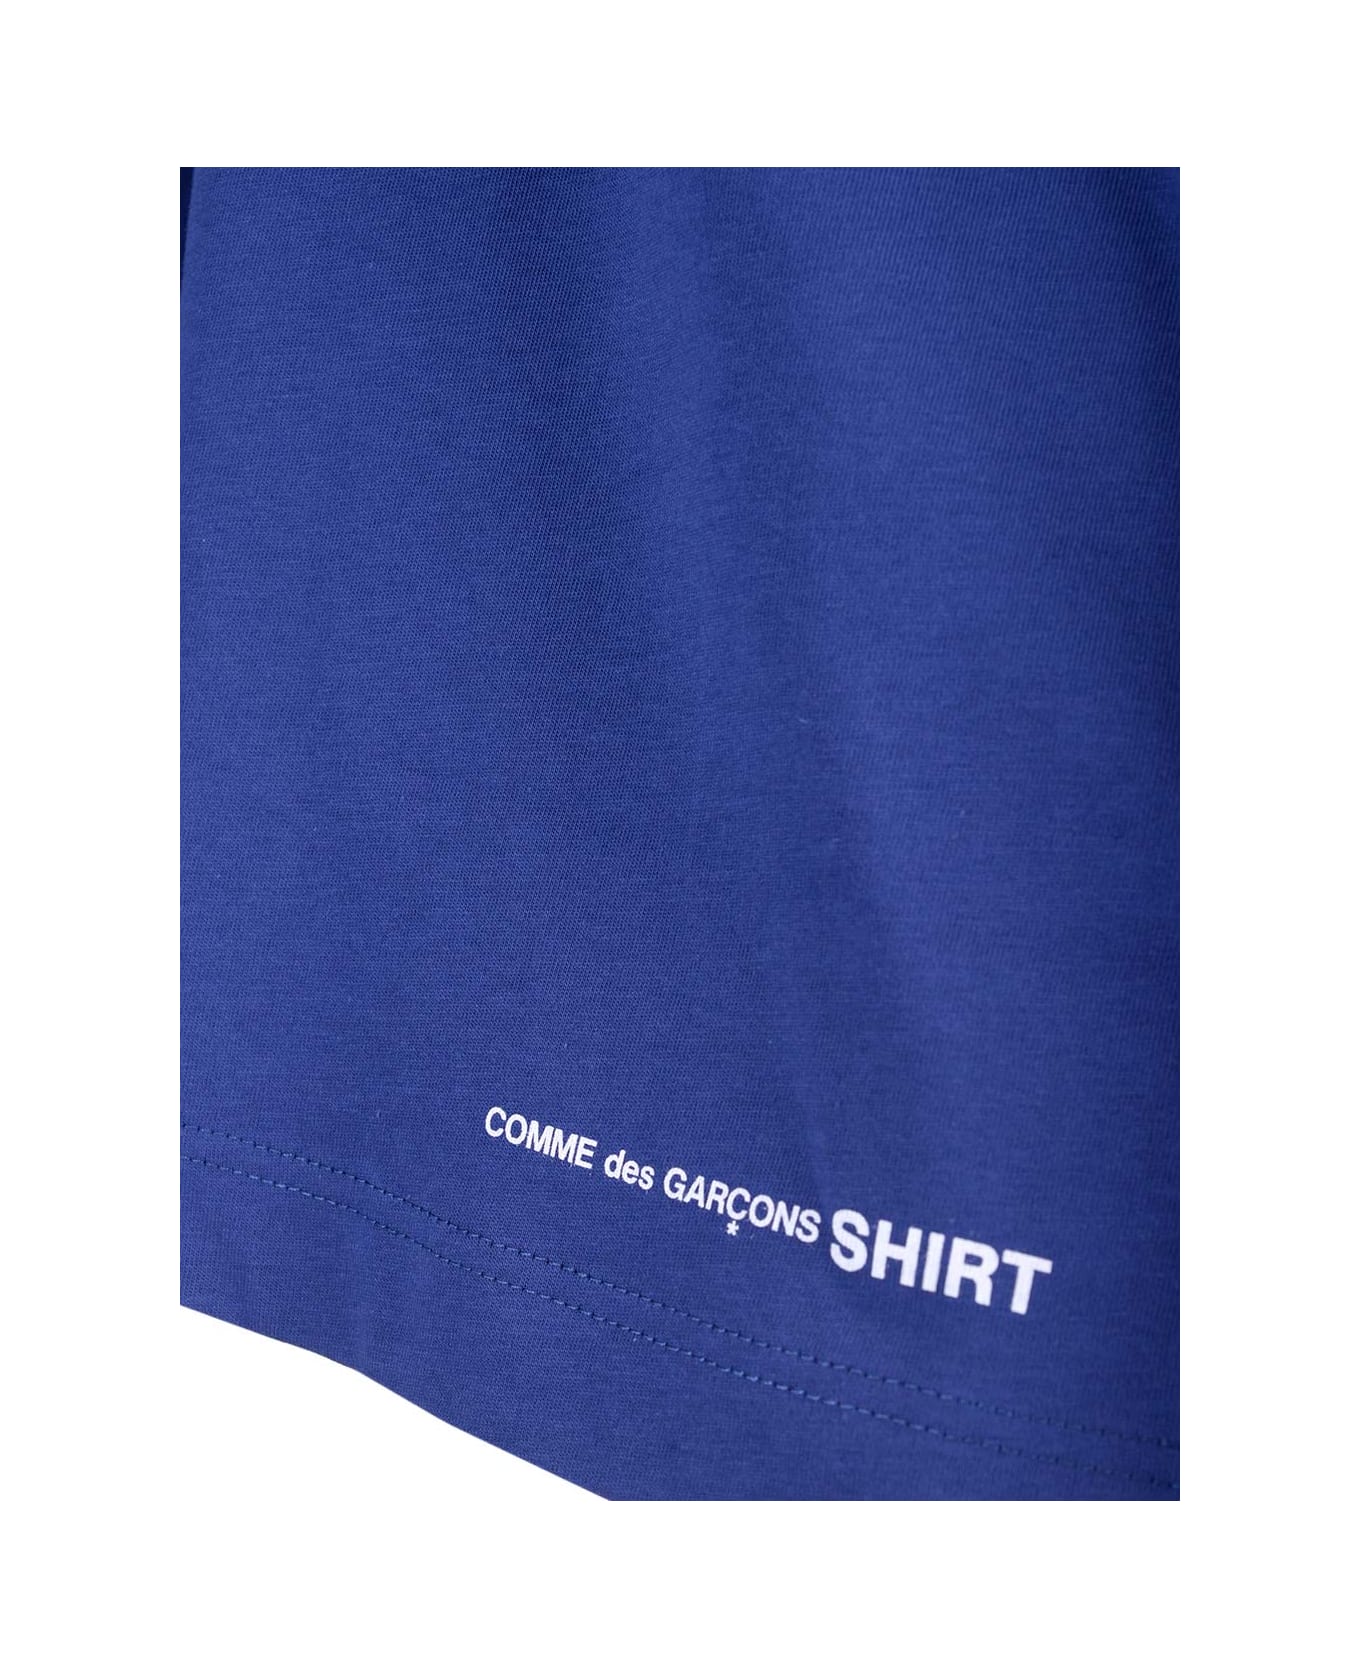 Comme des Garçons Shirt Electric Blue Over T-shirt - Navy